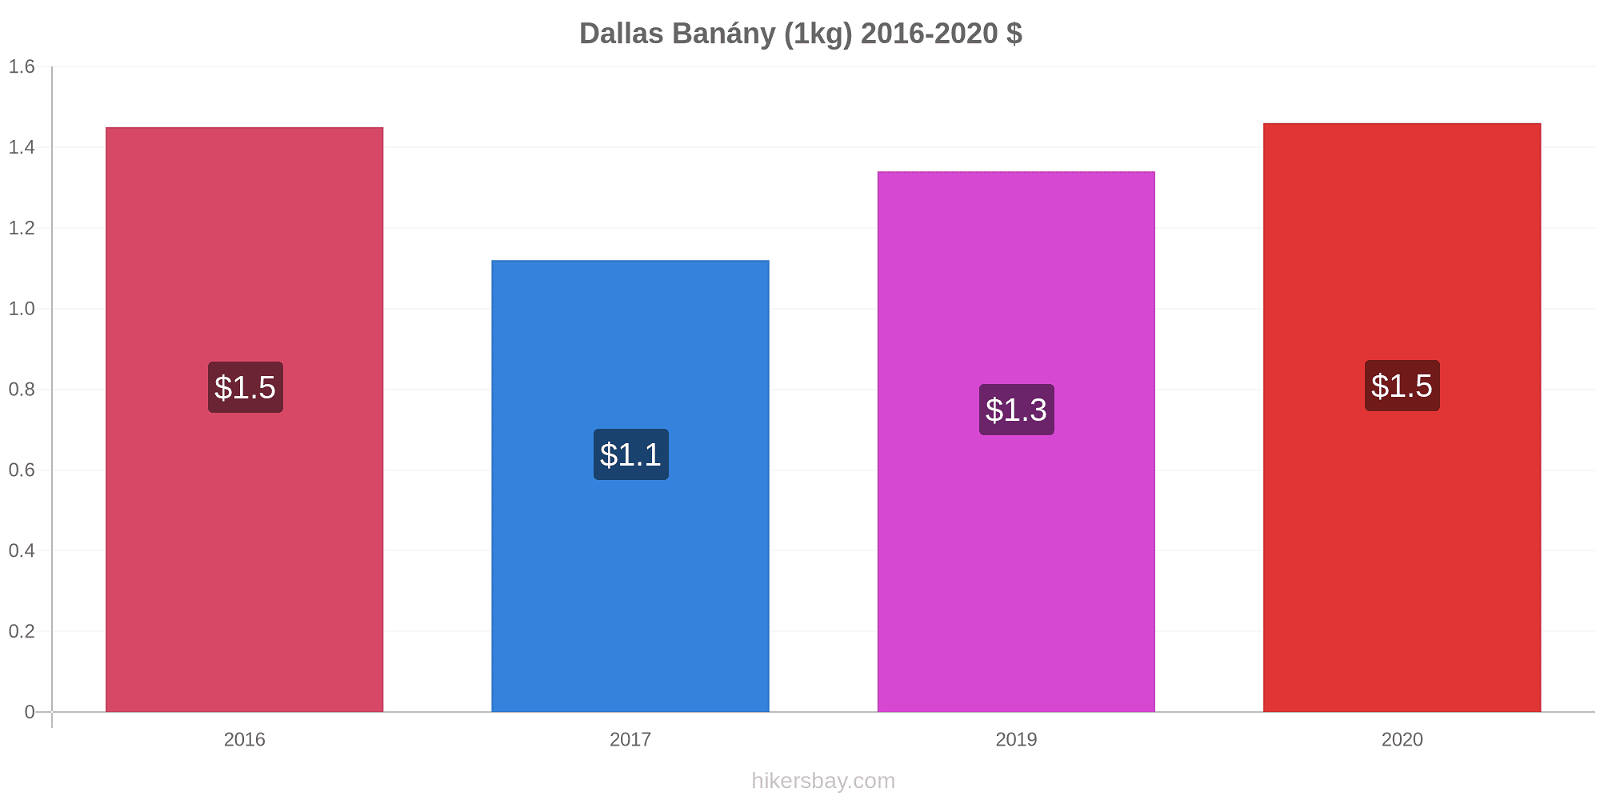 Dallas změny cen Banány (1kg) hikersbay.com